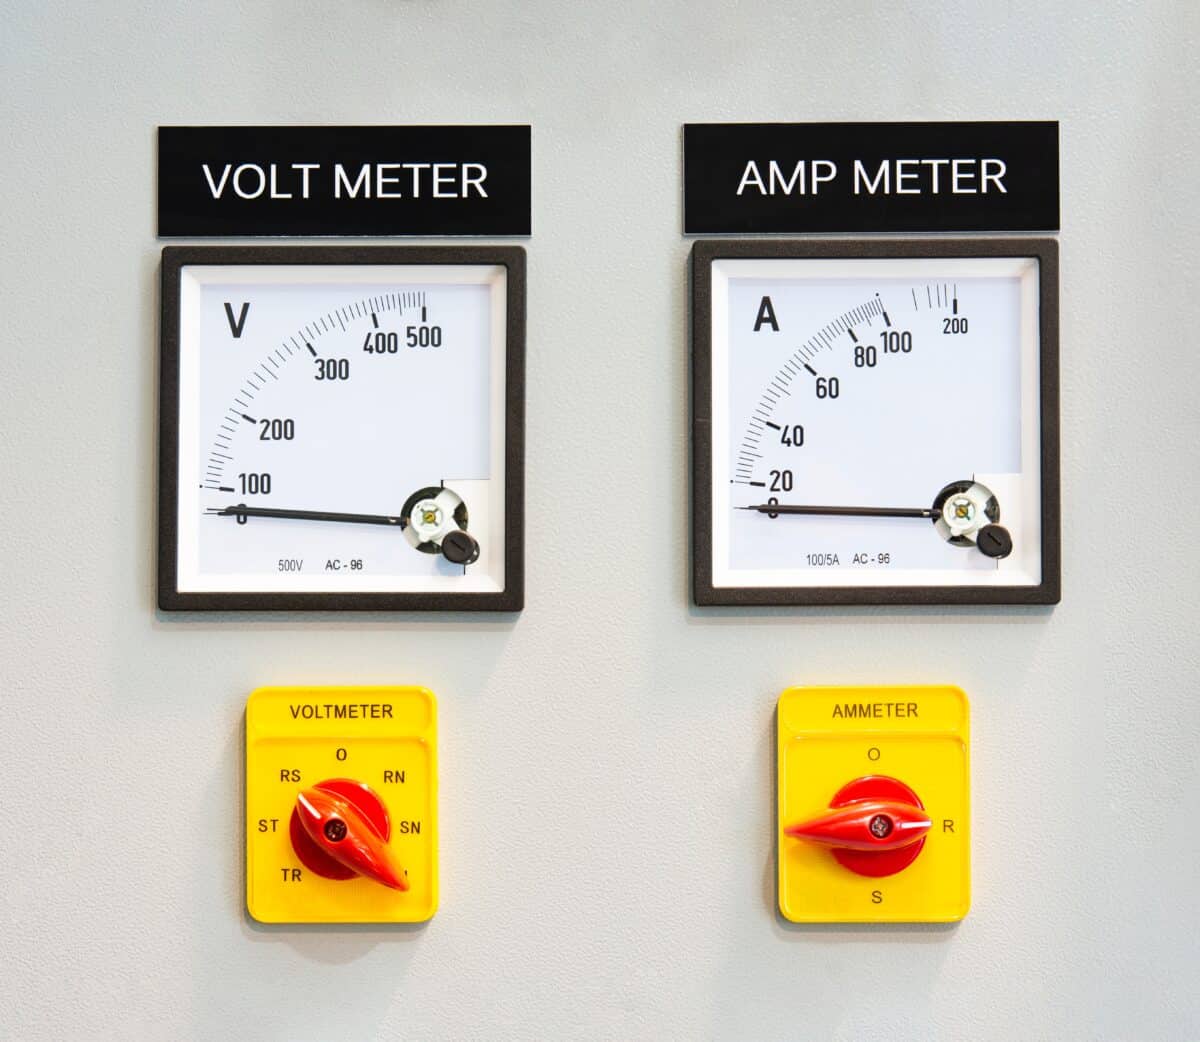 amps vs volts